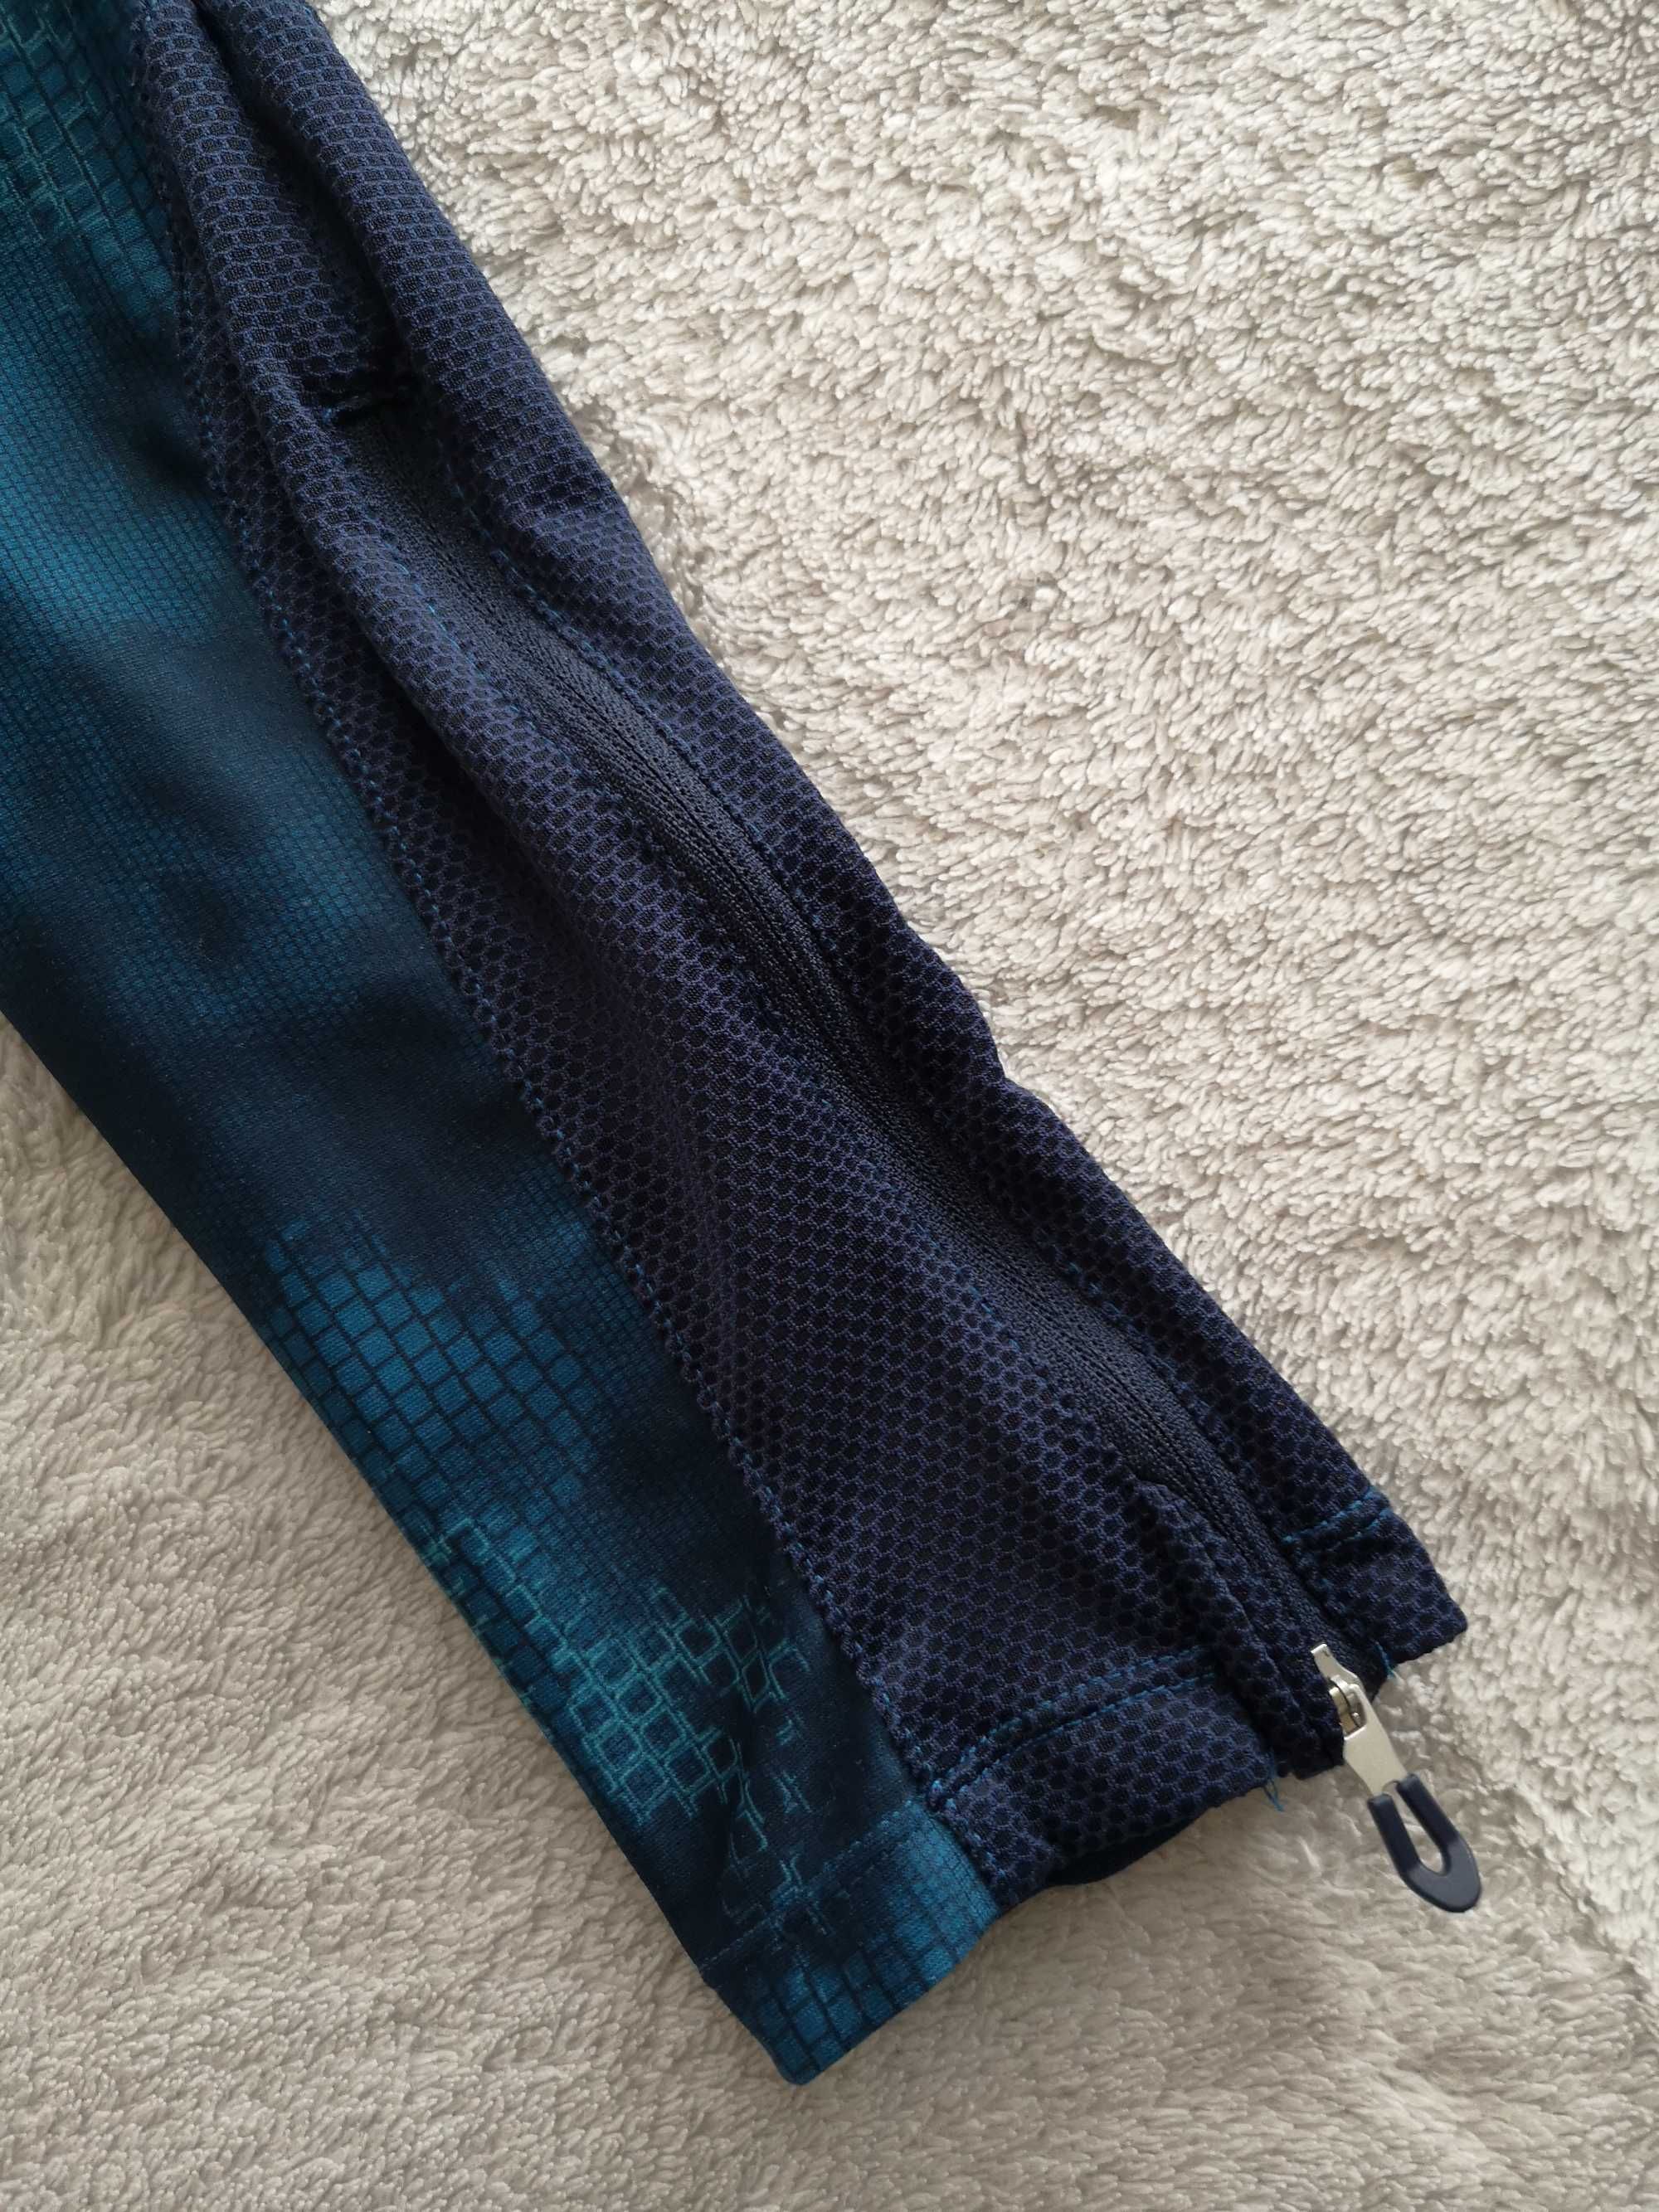 Niebieskie legginsy spodnie sportowe Decathlon Domyos 36